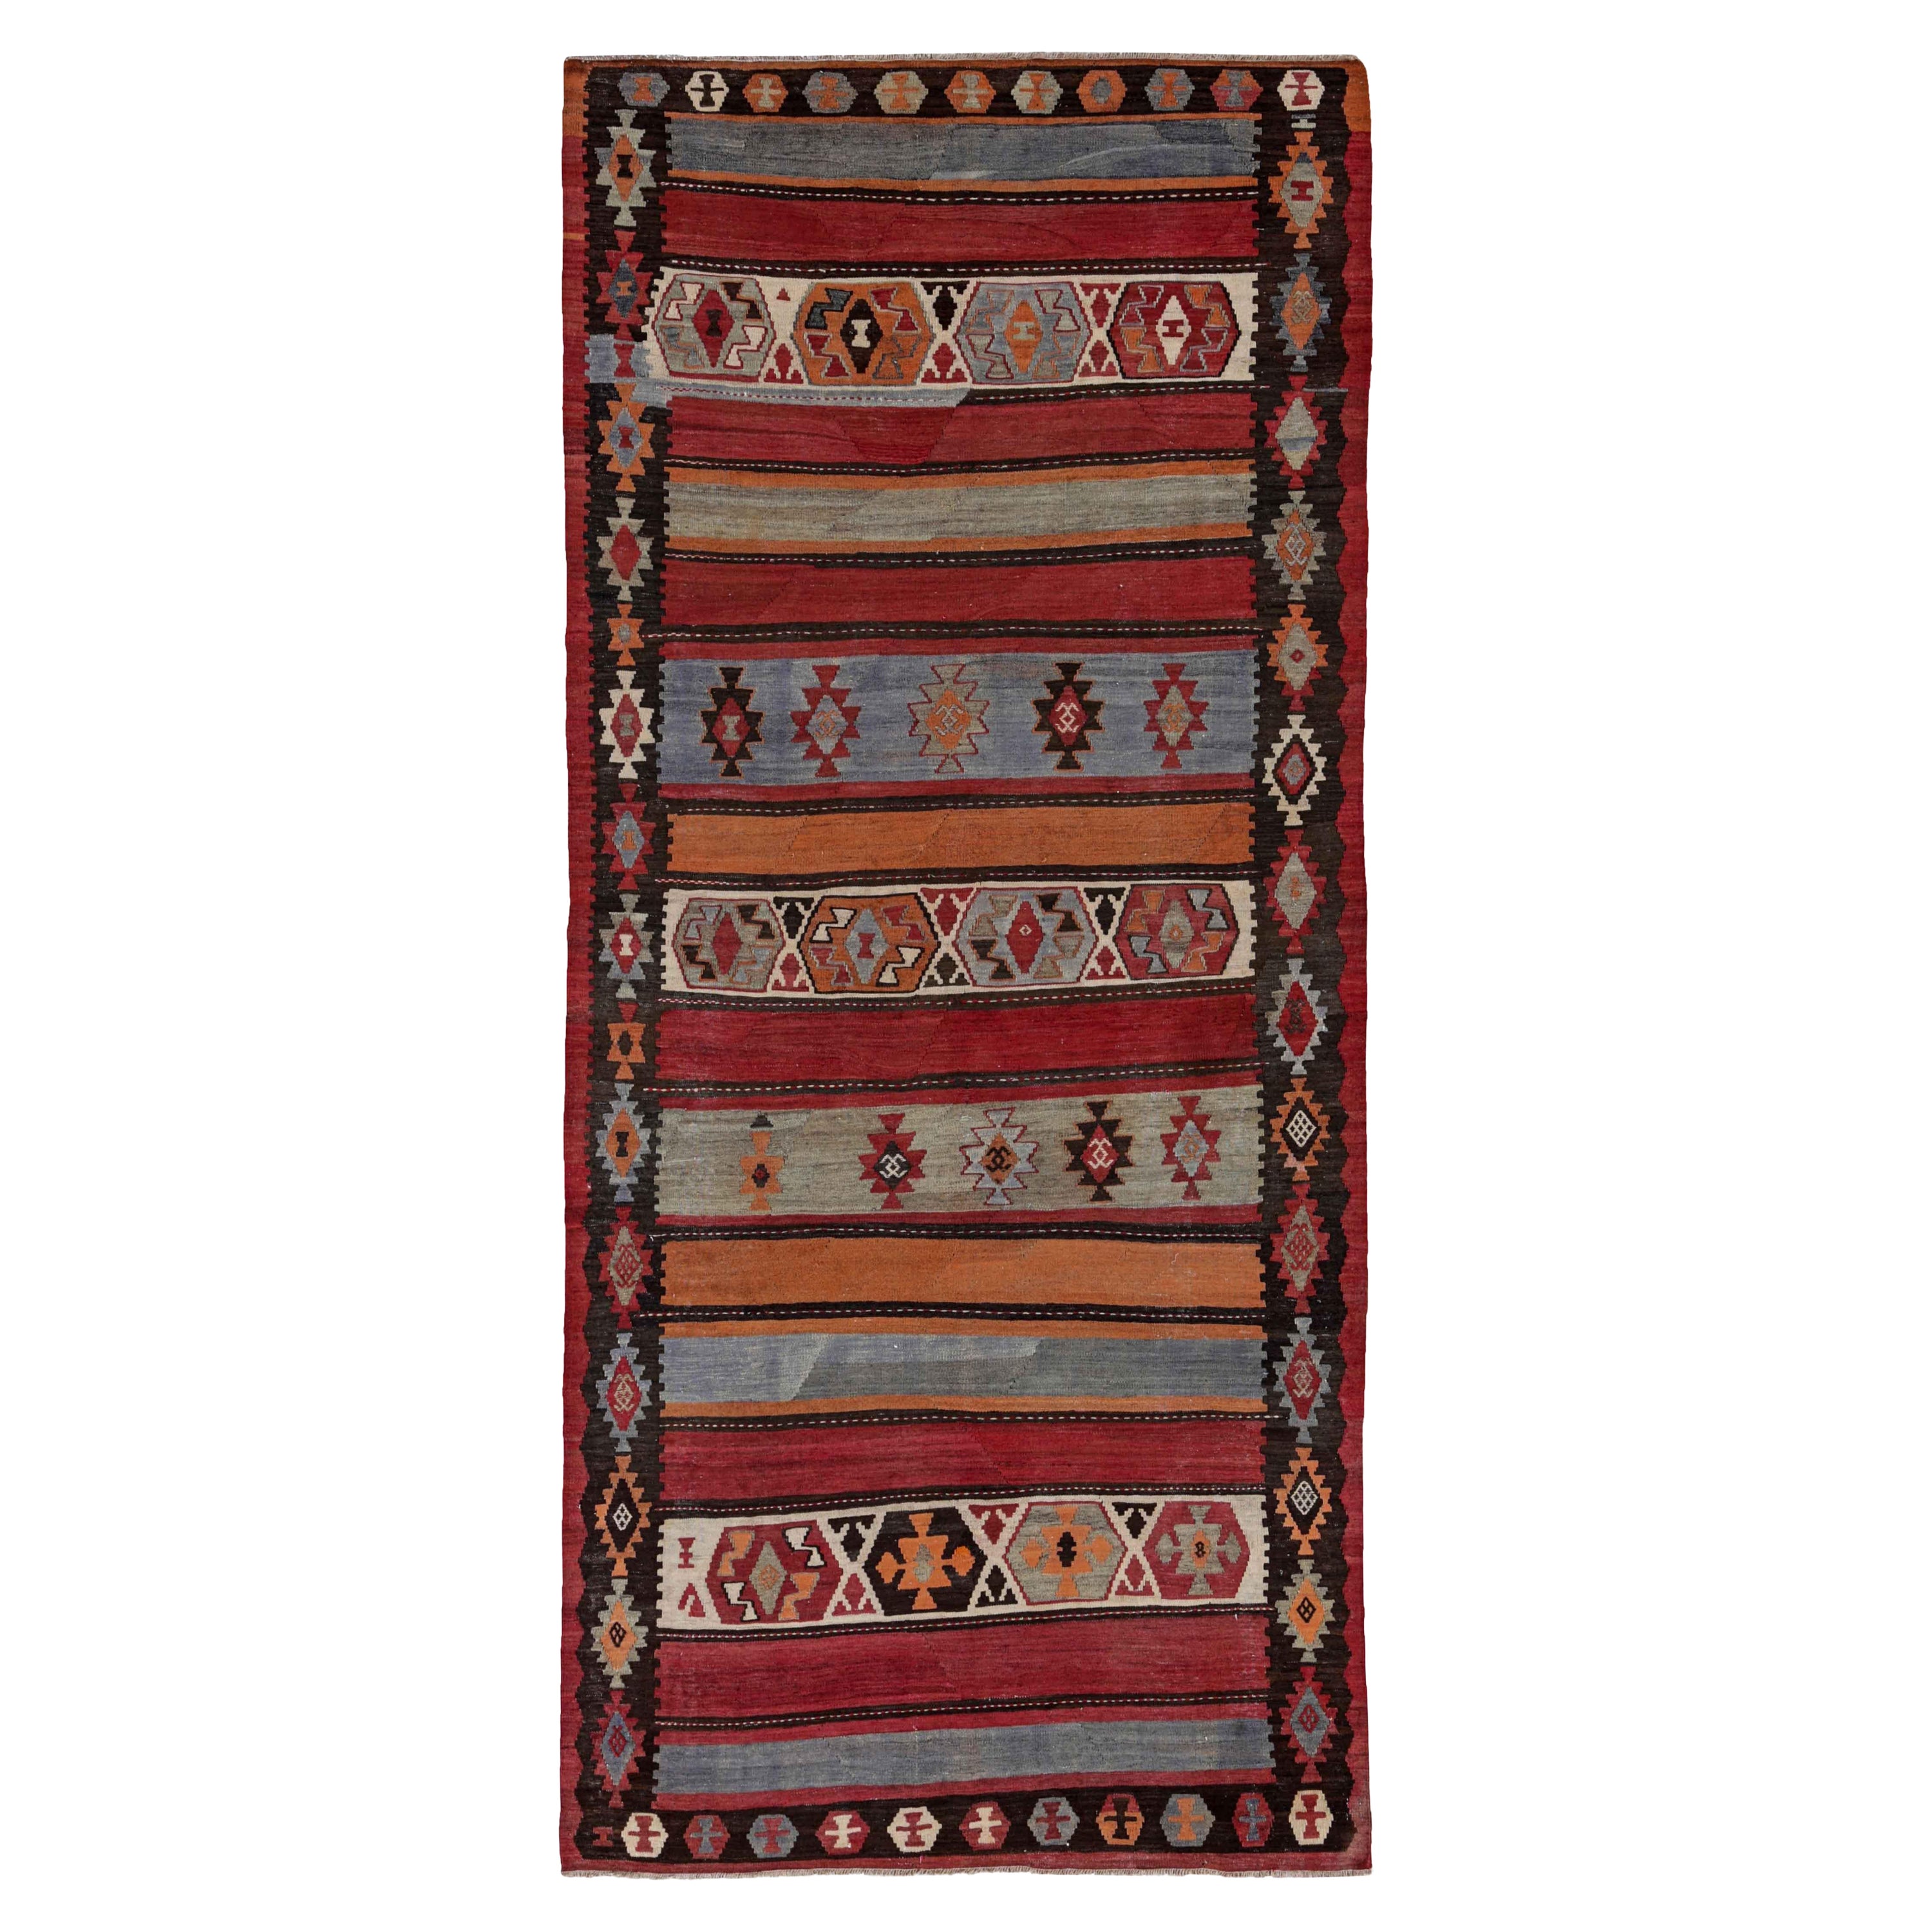 Antique Persian Area Rug Kilim Design